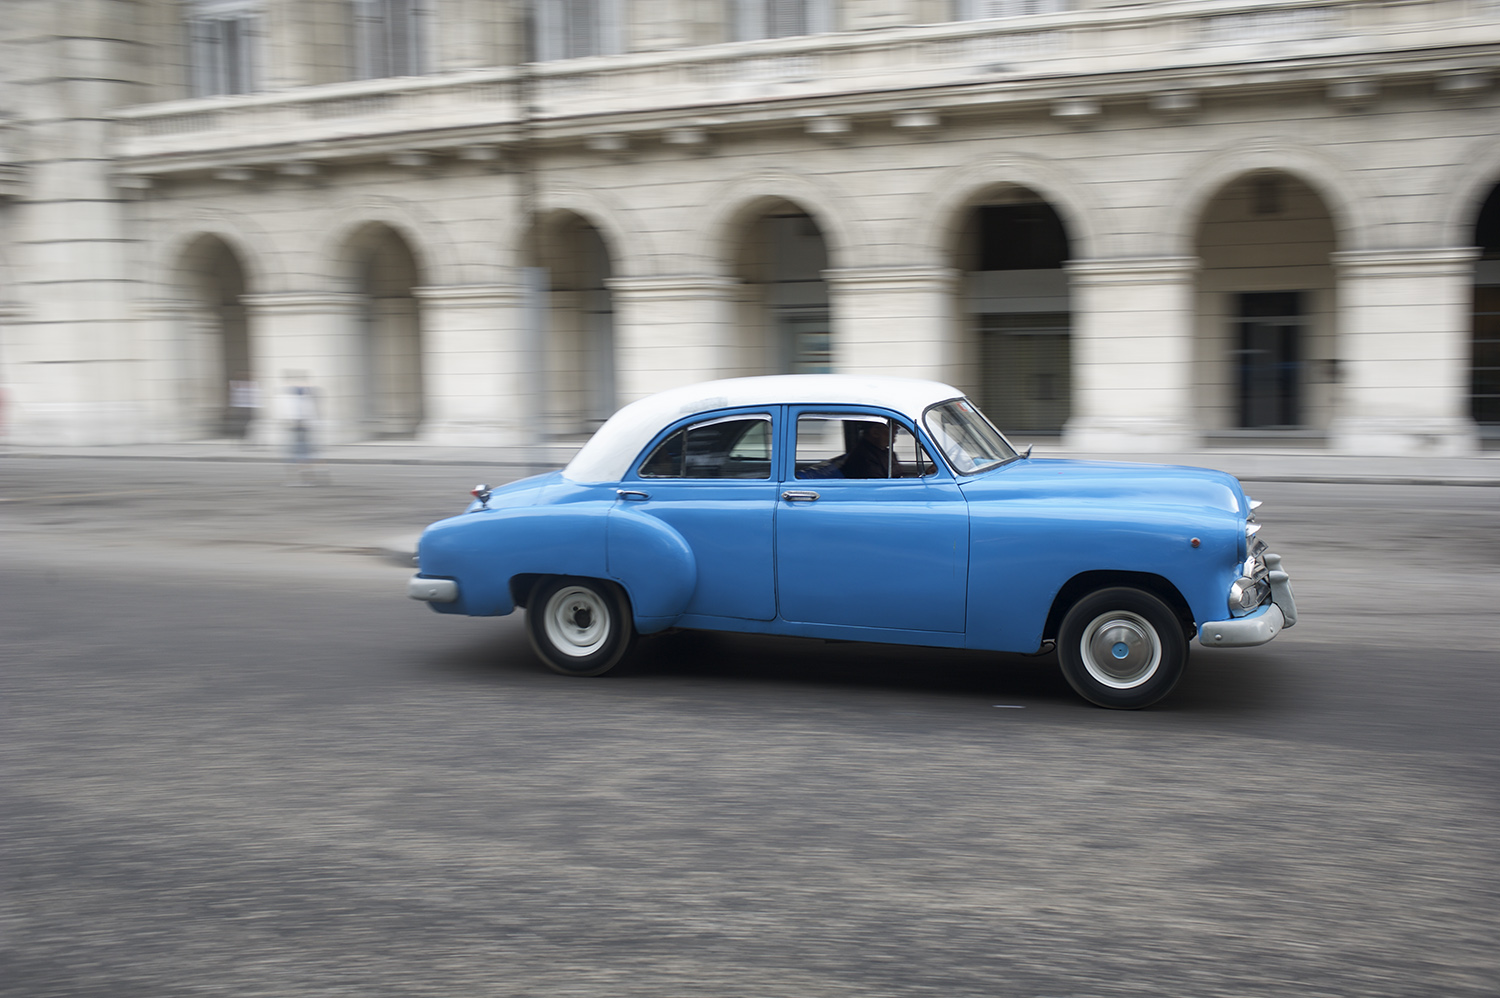 havana blue car blur.jpg